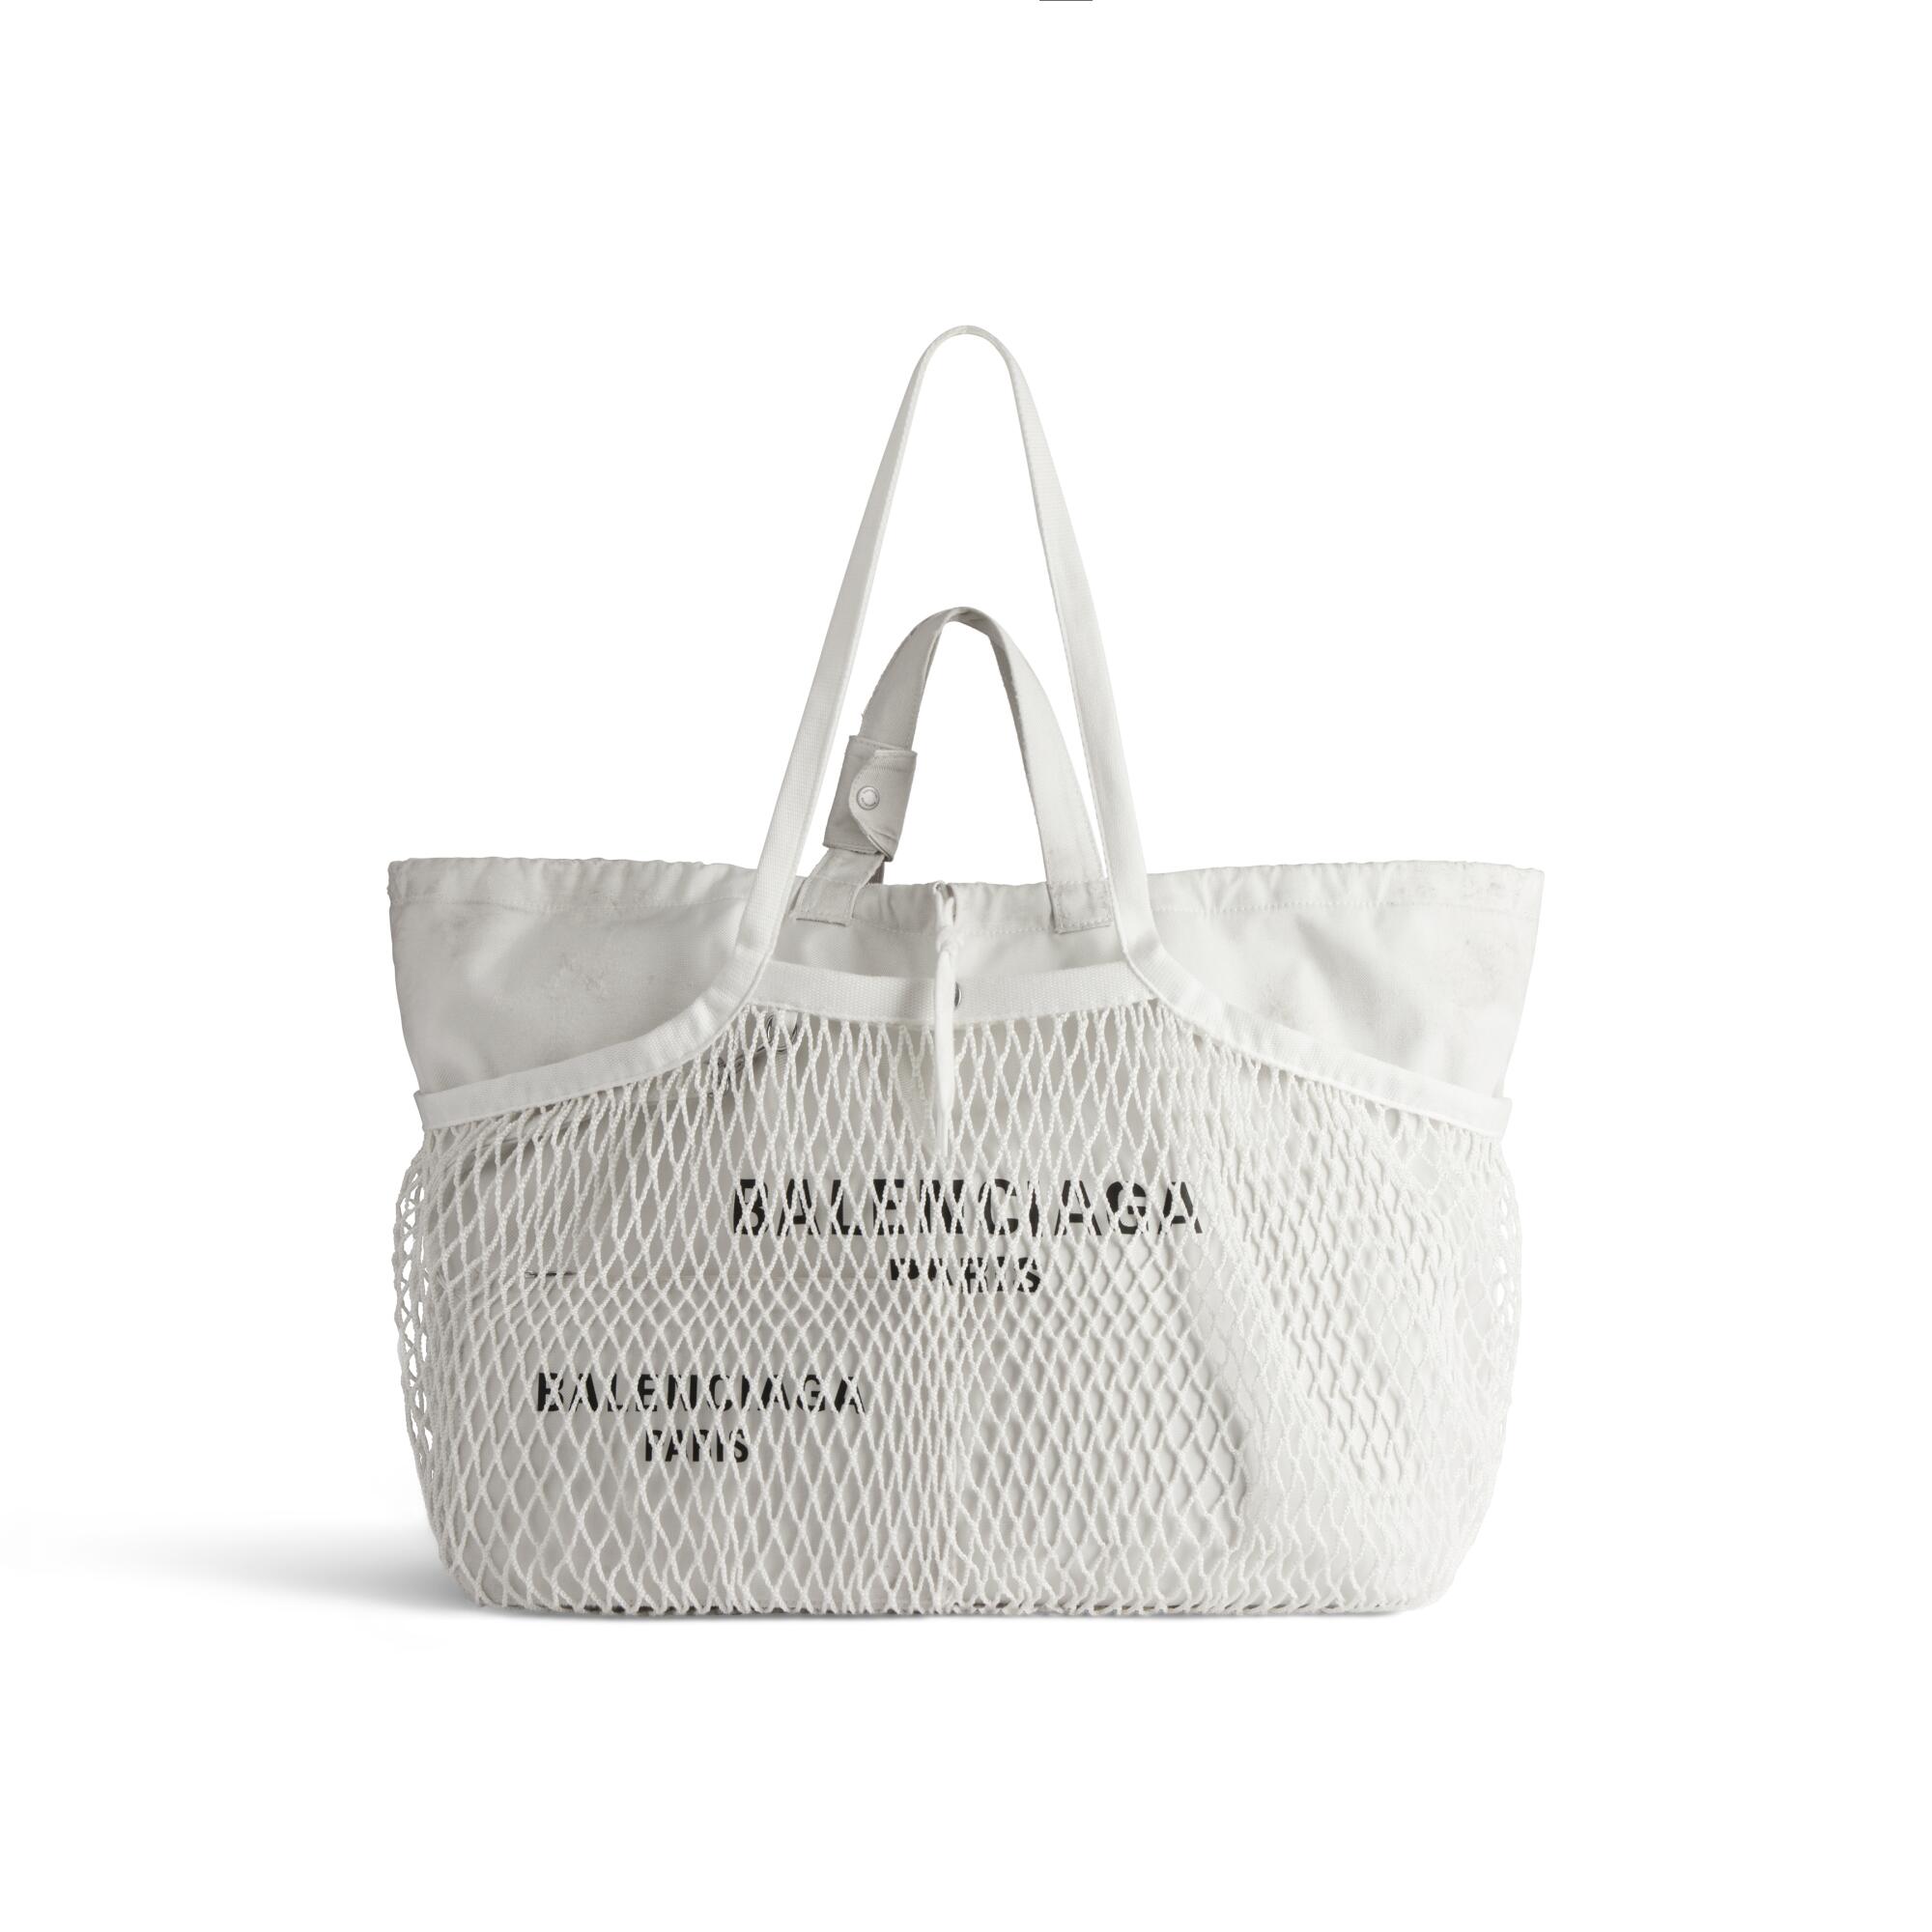 a white Balenciaga tote bag